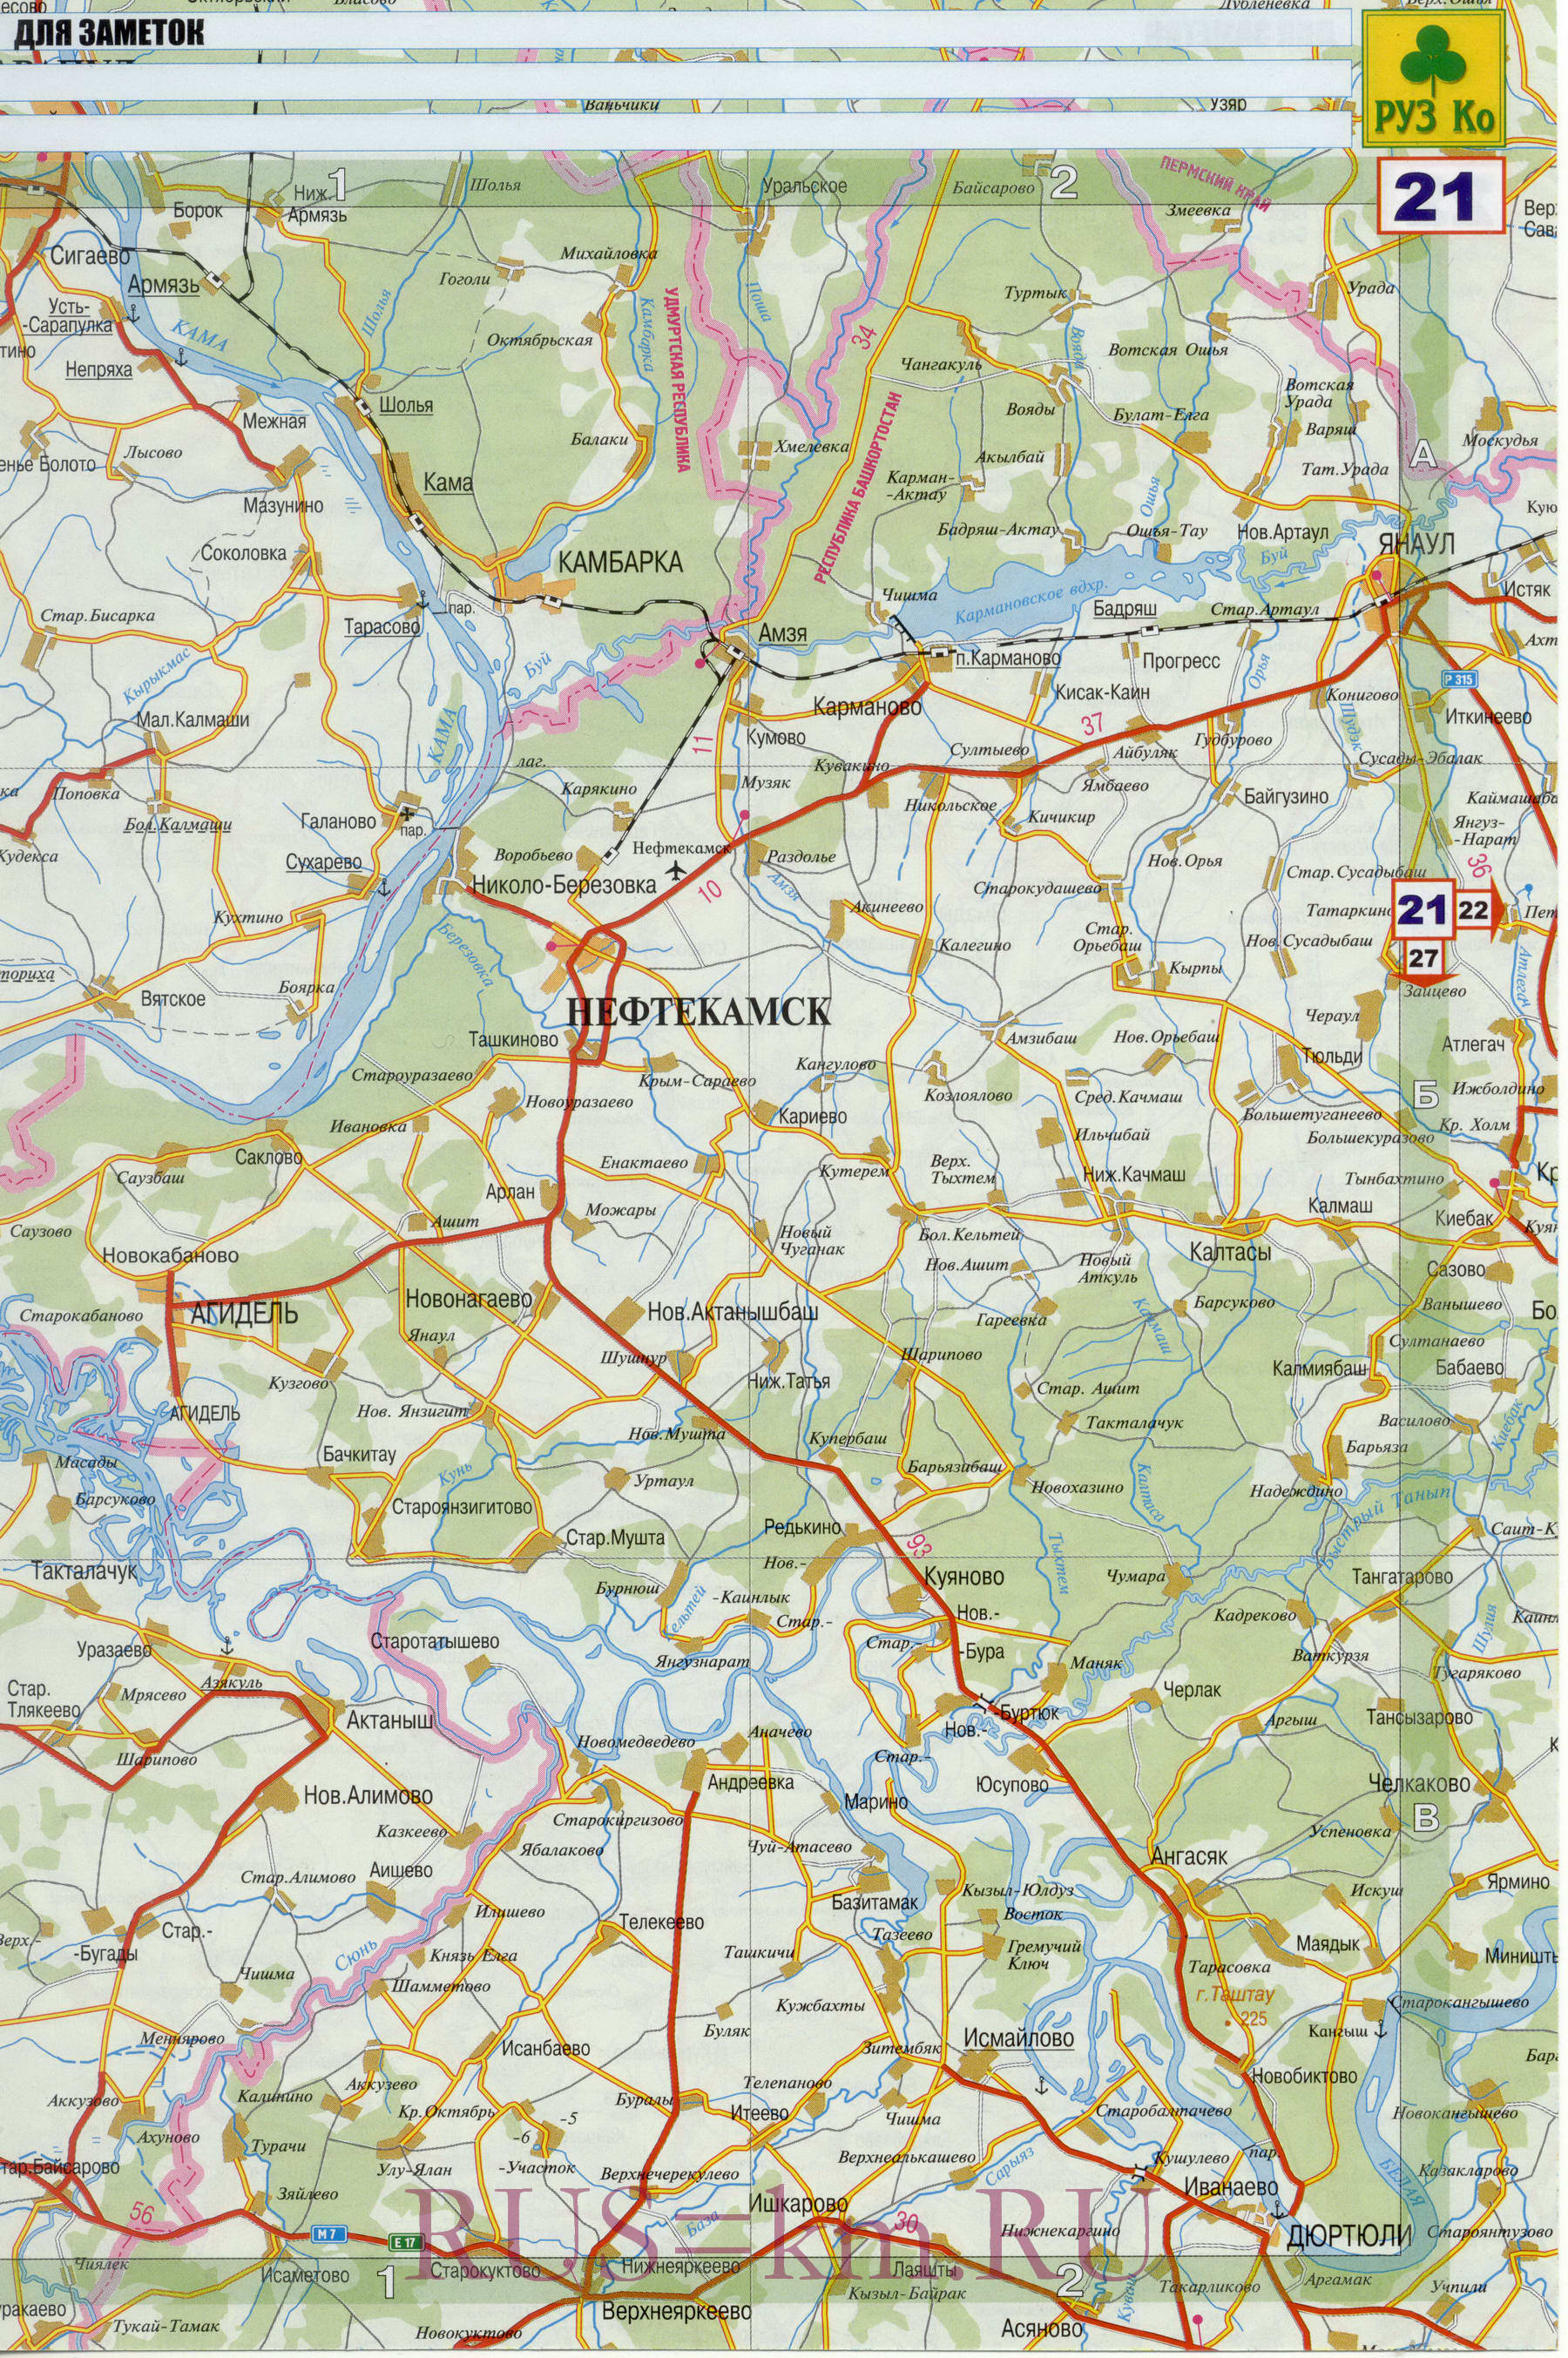 Карта дорог Янаула. Детальная карта дорог города Янаул и окрестностей, A0 - 